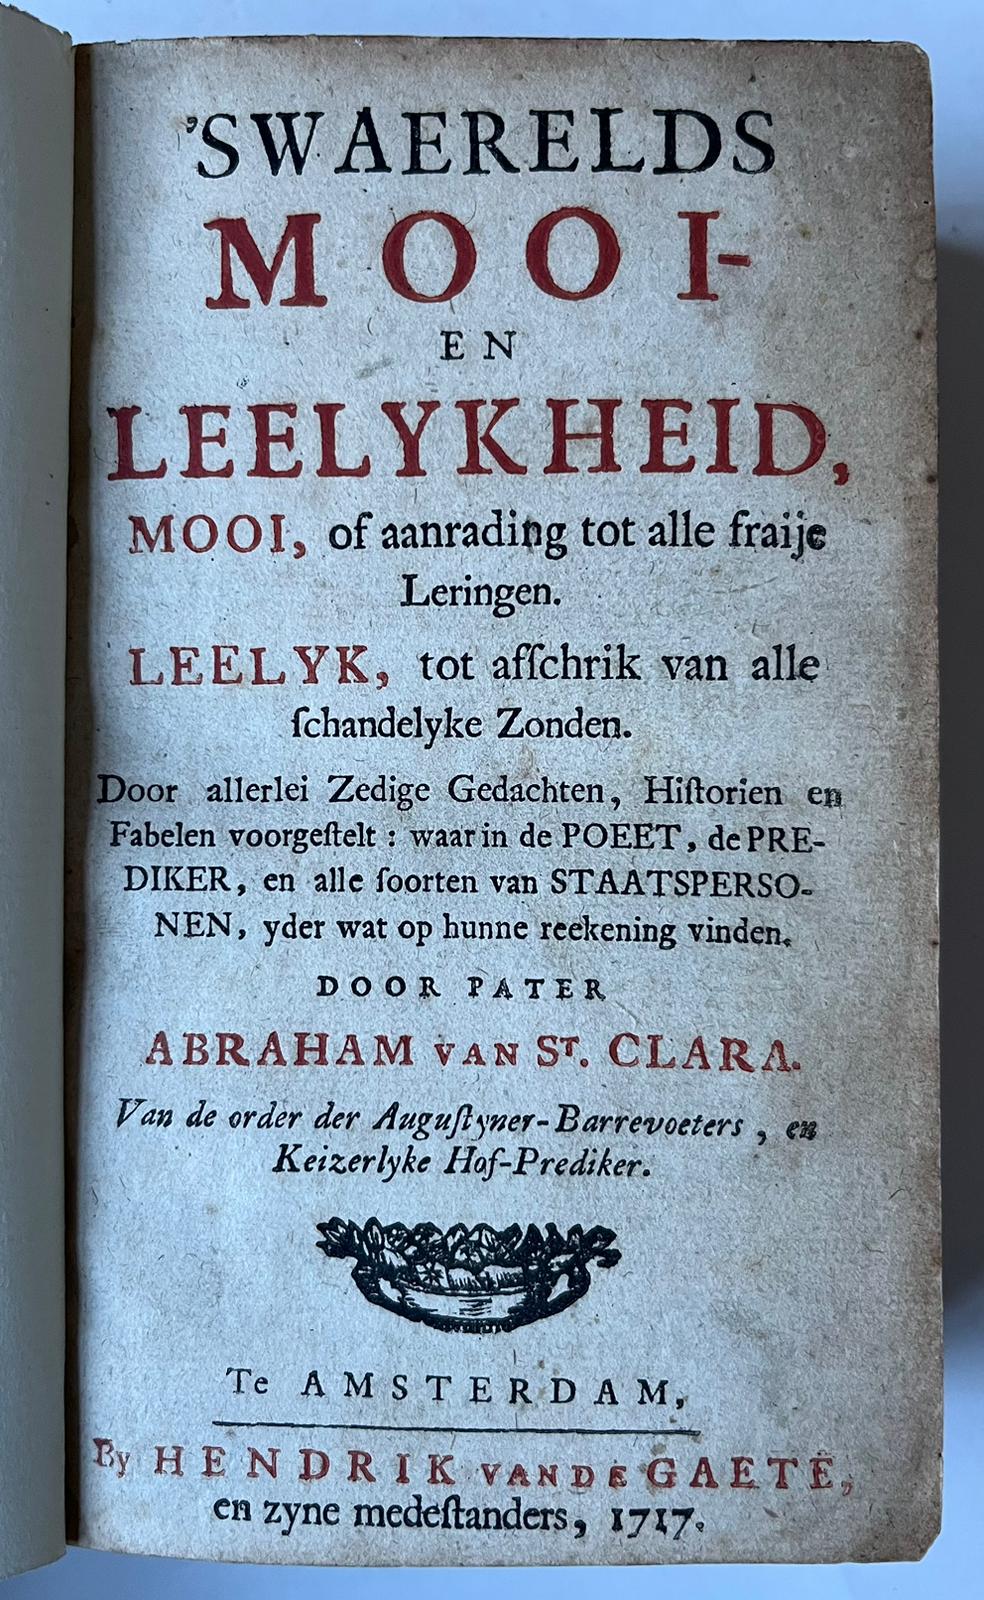 [Literature 1717] ‘s Waerelds mooi -en leelykheid, mooi, of aanrading tot alle fraije leringen. Leelyk, tot afschrik van alle schandelyke zonden. (...). Amsterdam, Hendrik van de Gaete, 1717, [2 parts in 1 volume]